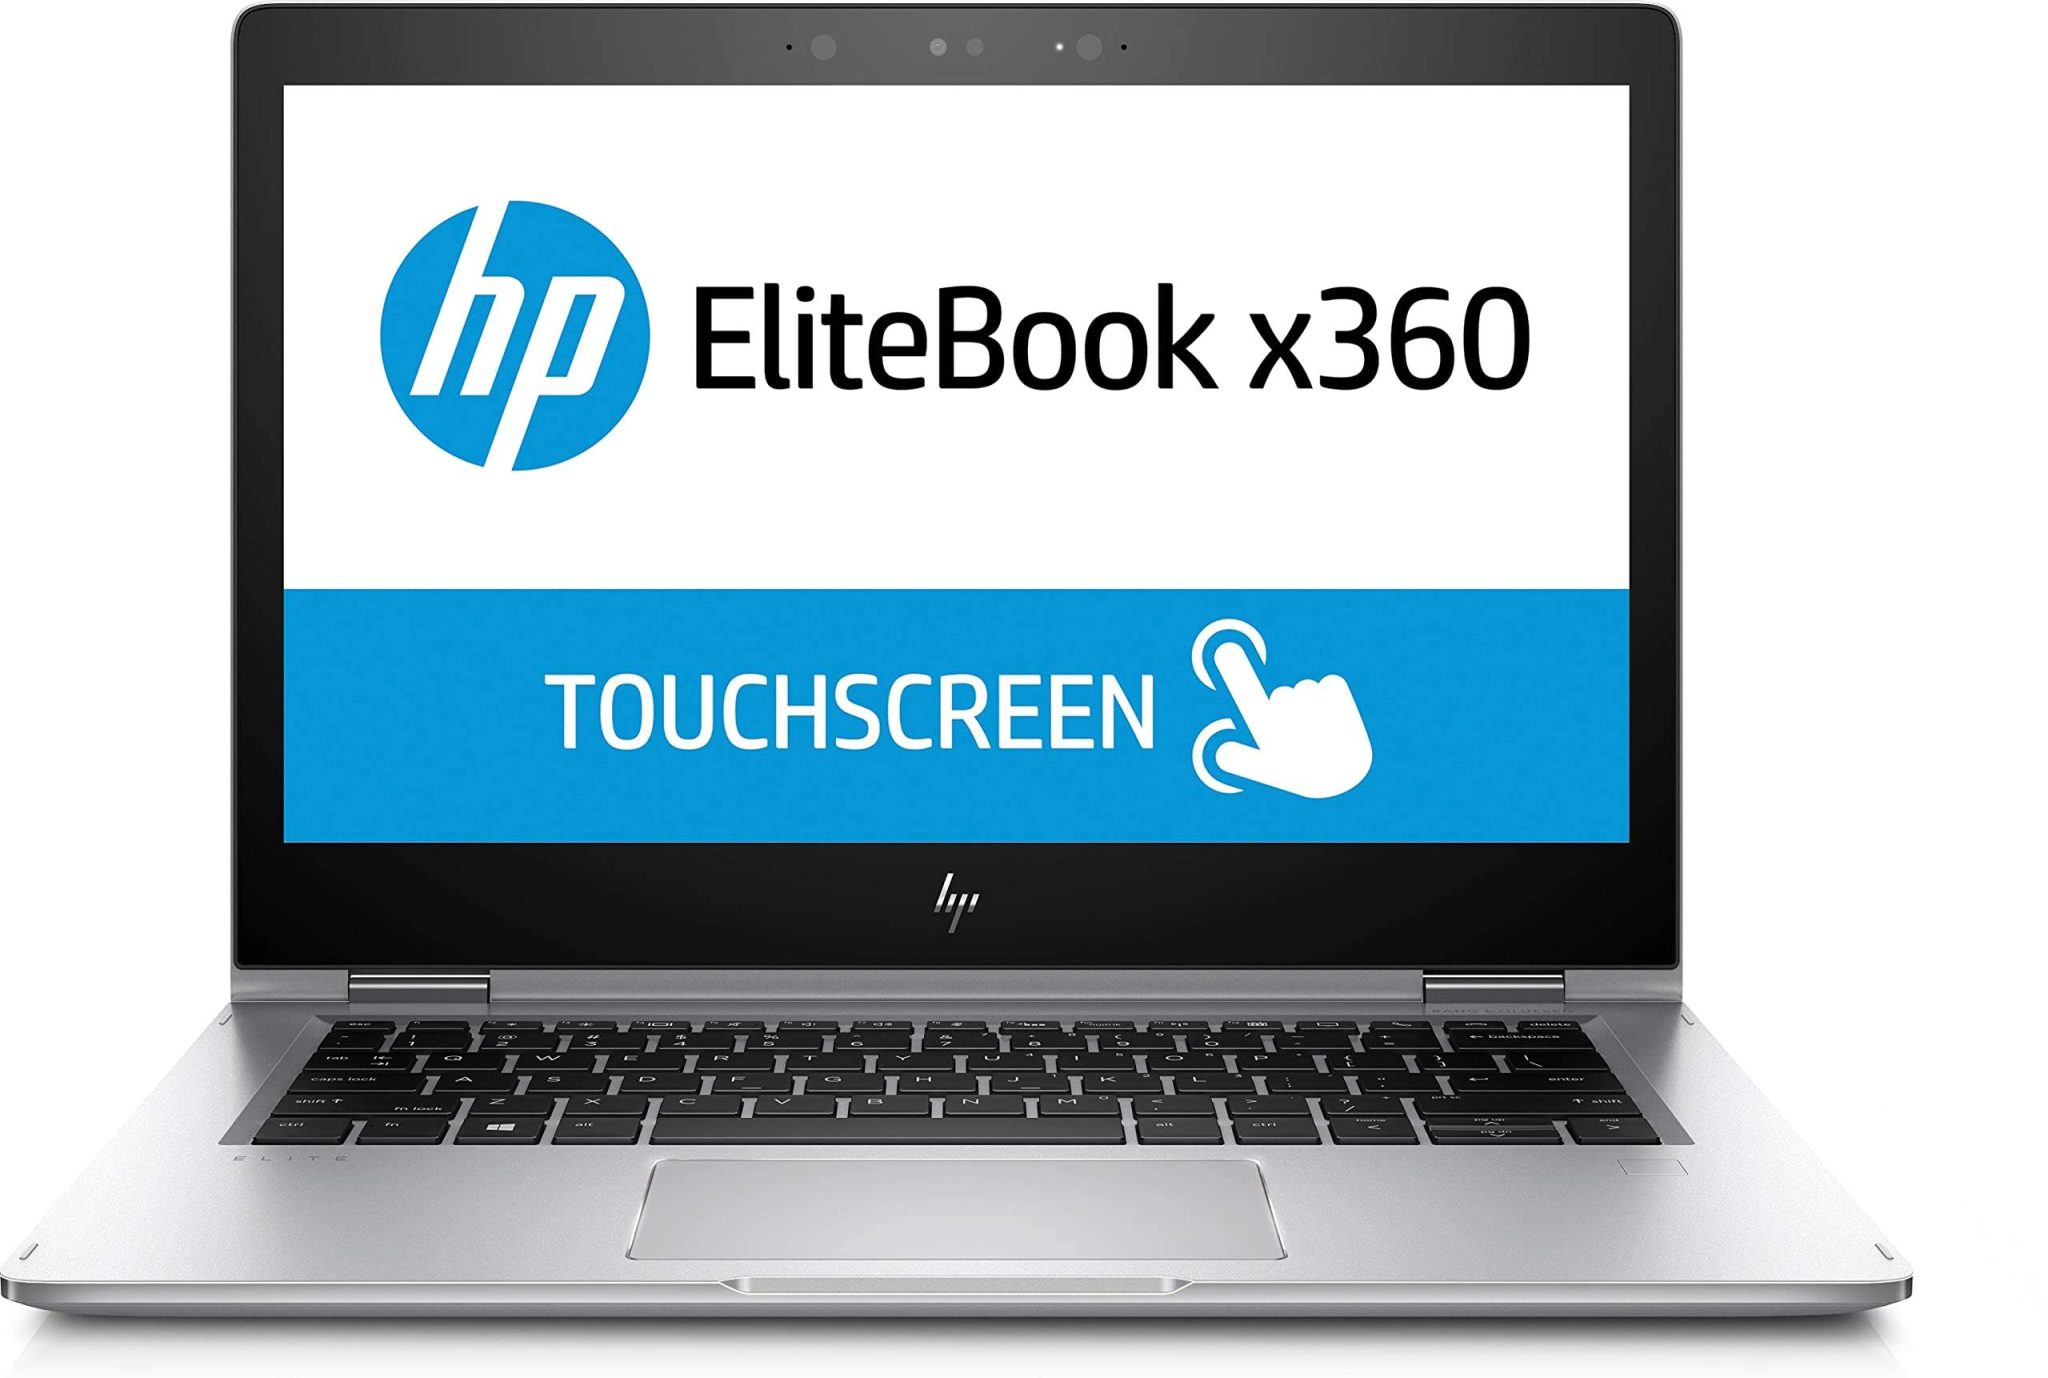 HP EliteBook x360 1030 G2 CONVERTIBLE 2 EN 1 VORPC SSD